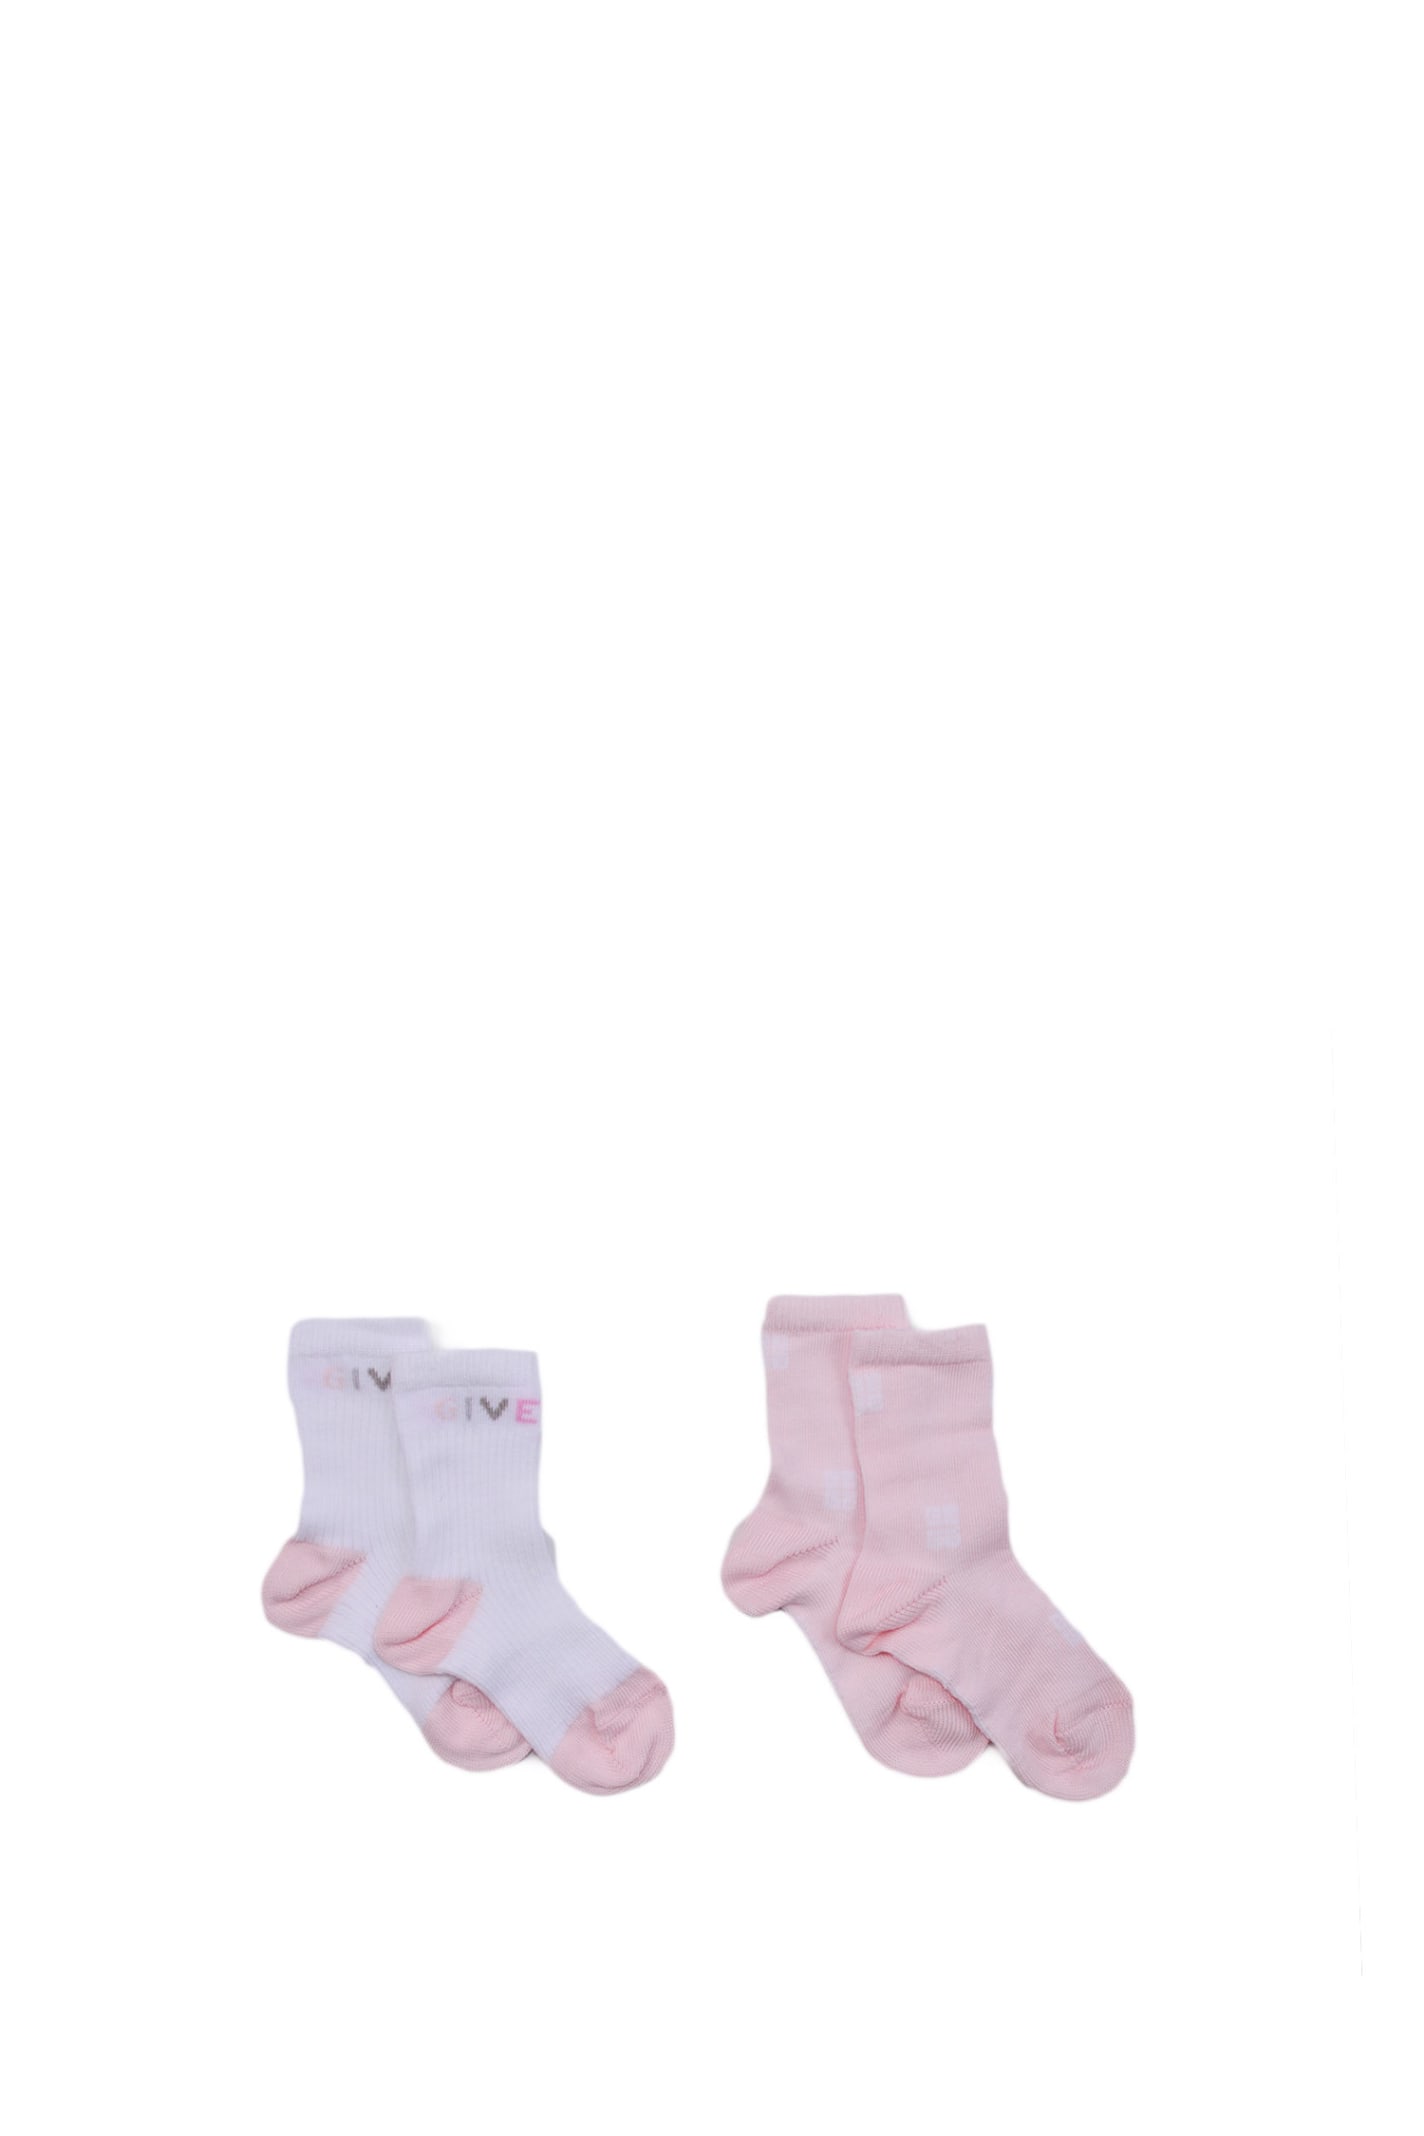 Givenchy Kids' Cotton Blend Socks Set In Rose